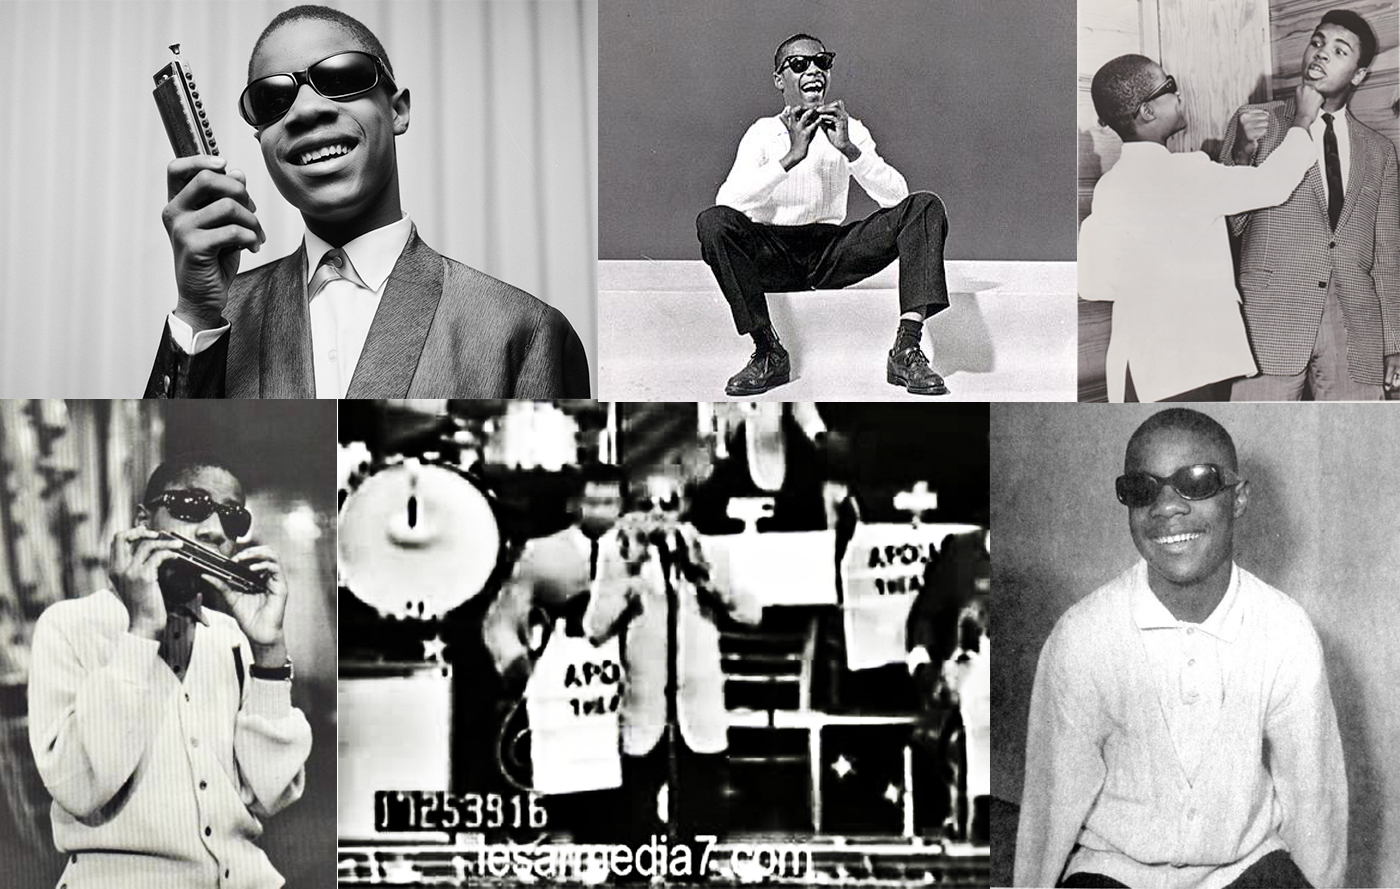 “Fingertips (Part 2)” - Stevie Wonder 1963